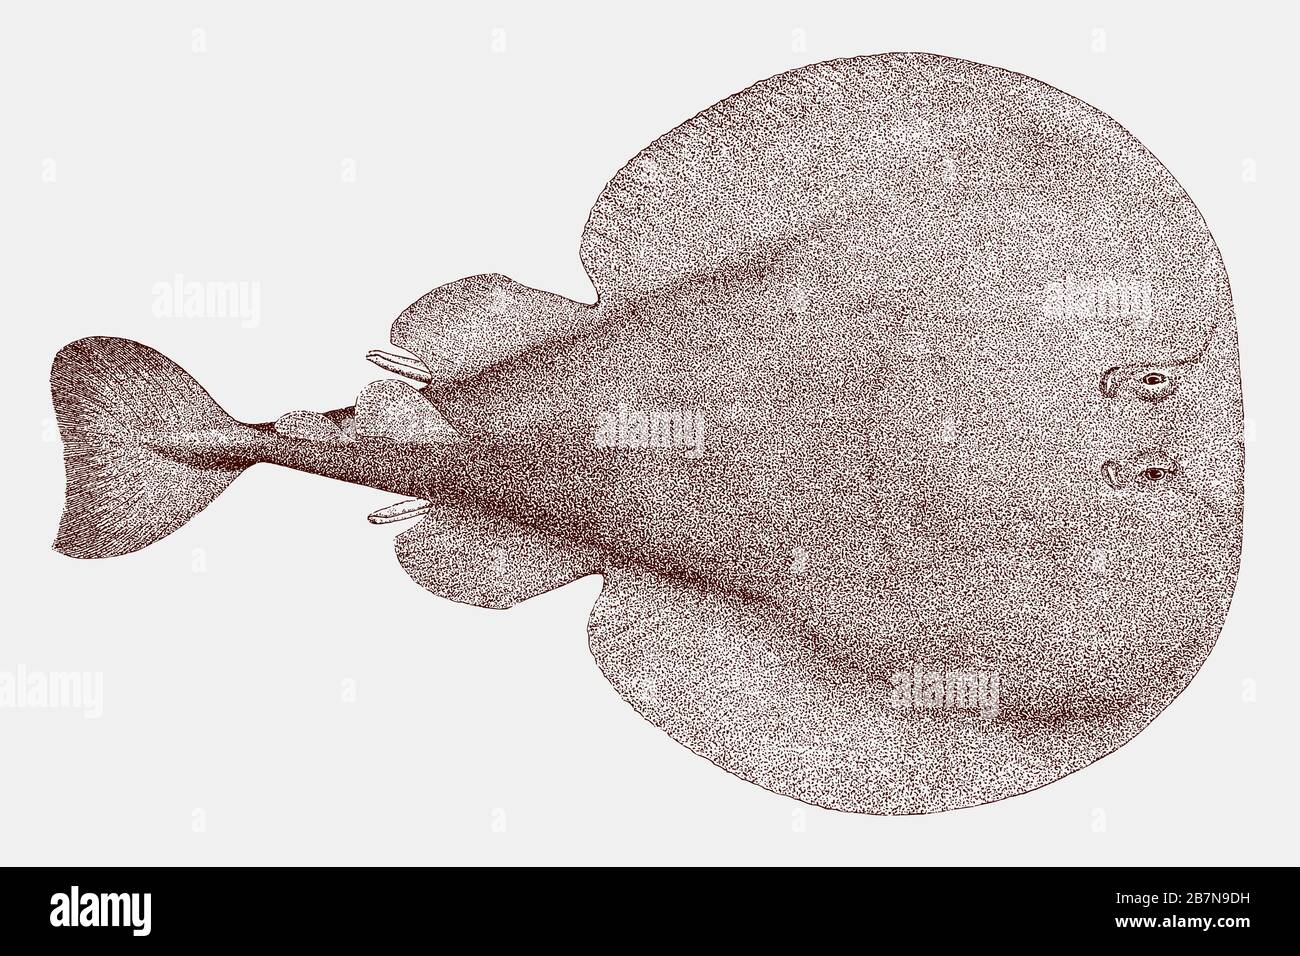 Torpedo fish immagini e fotografie stock ad alta risoluzione - Alamy